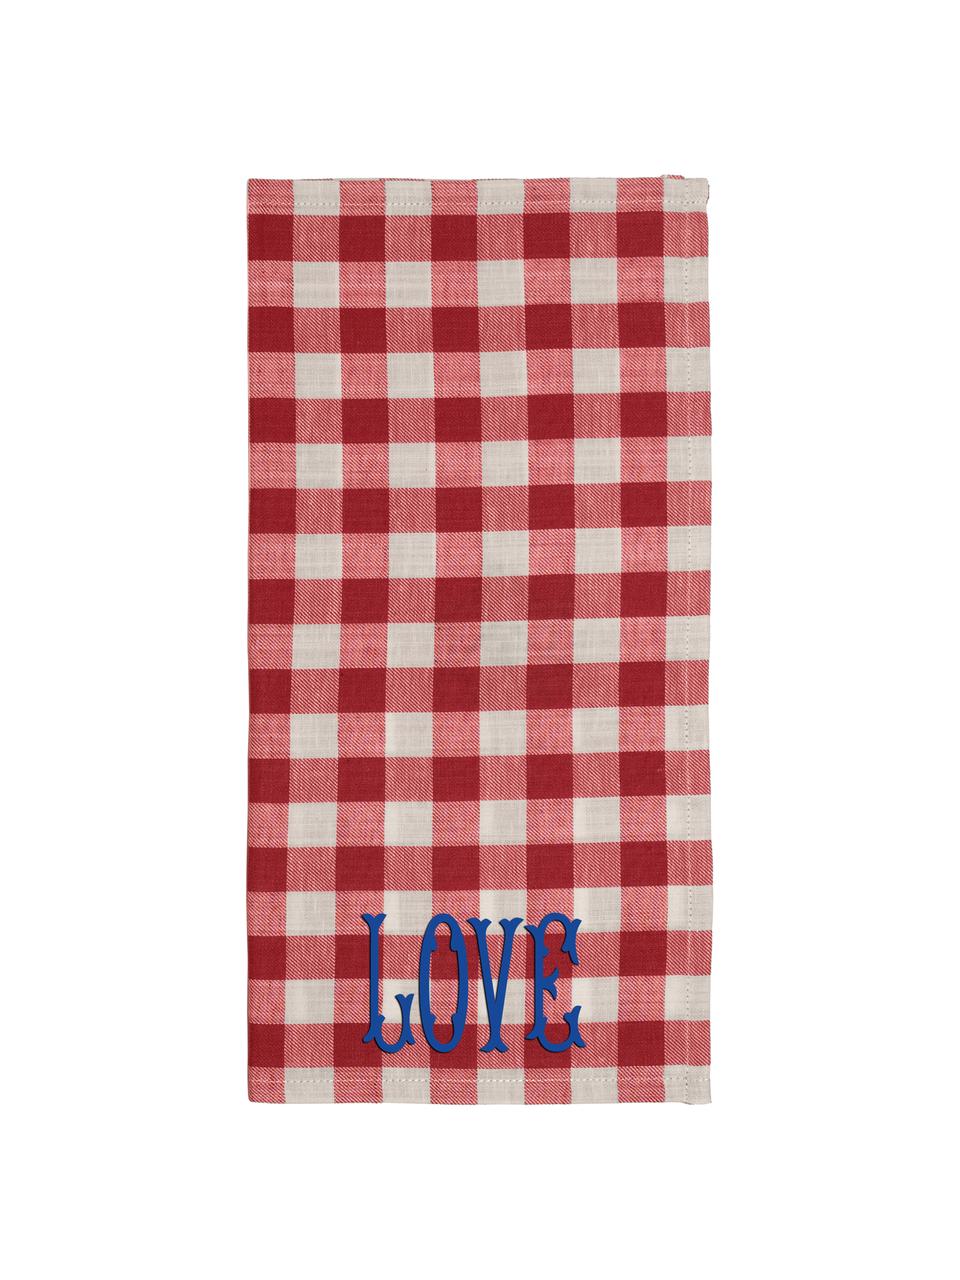 Baumwoll-Geschirrtücher Love mit Karomuster in Rot/Beige, 2 Stück, 84% Baumwolle, 16% Leinen, Rot, Beige, 45 x 45 cm